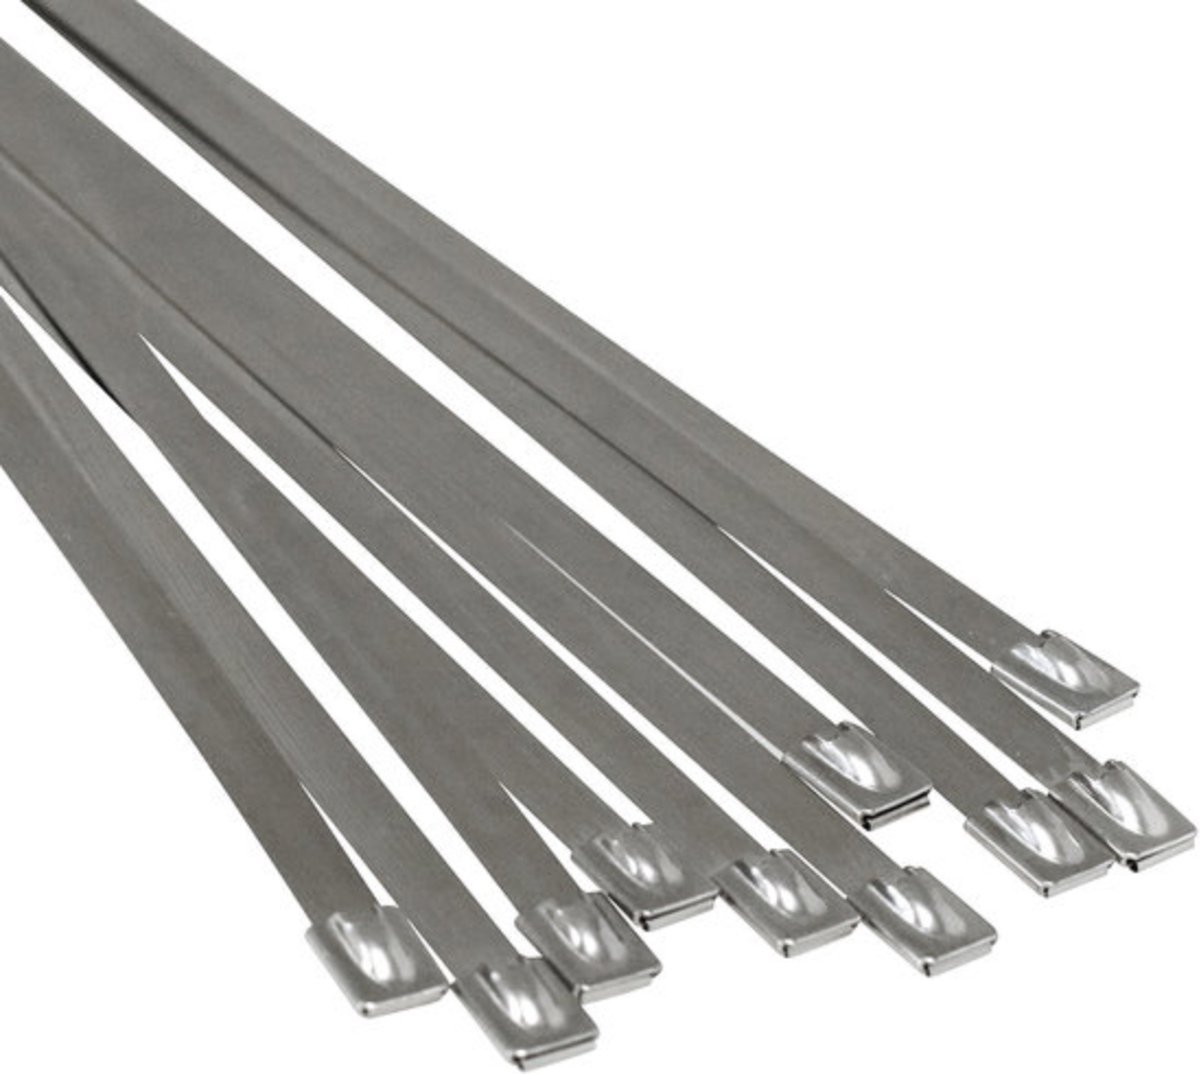 Tie wraps - RVS - 24 stuks - Lengte: 300 mm - Breedte: 4.6 mm - Roestvrij staal - Tie wrap - Kabelbinder - Tie-wrap